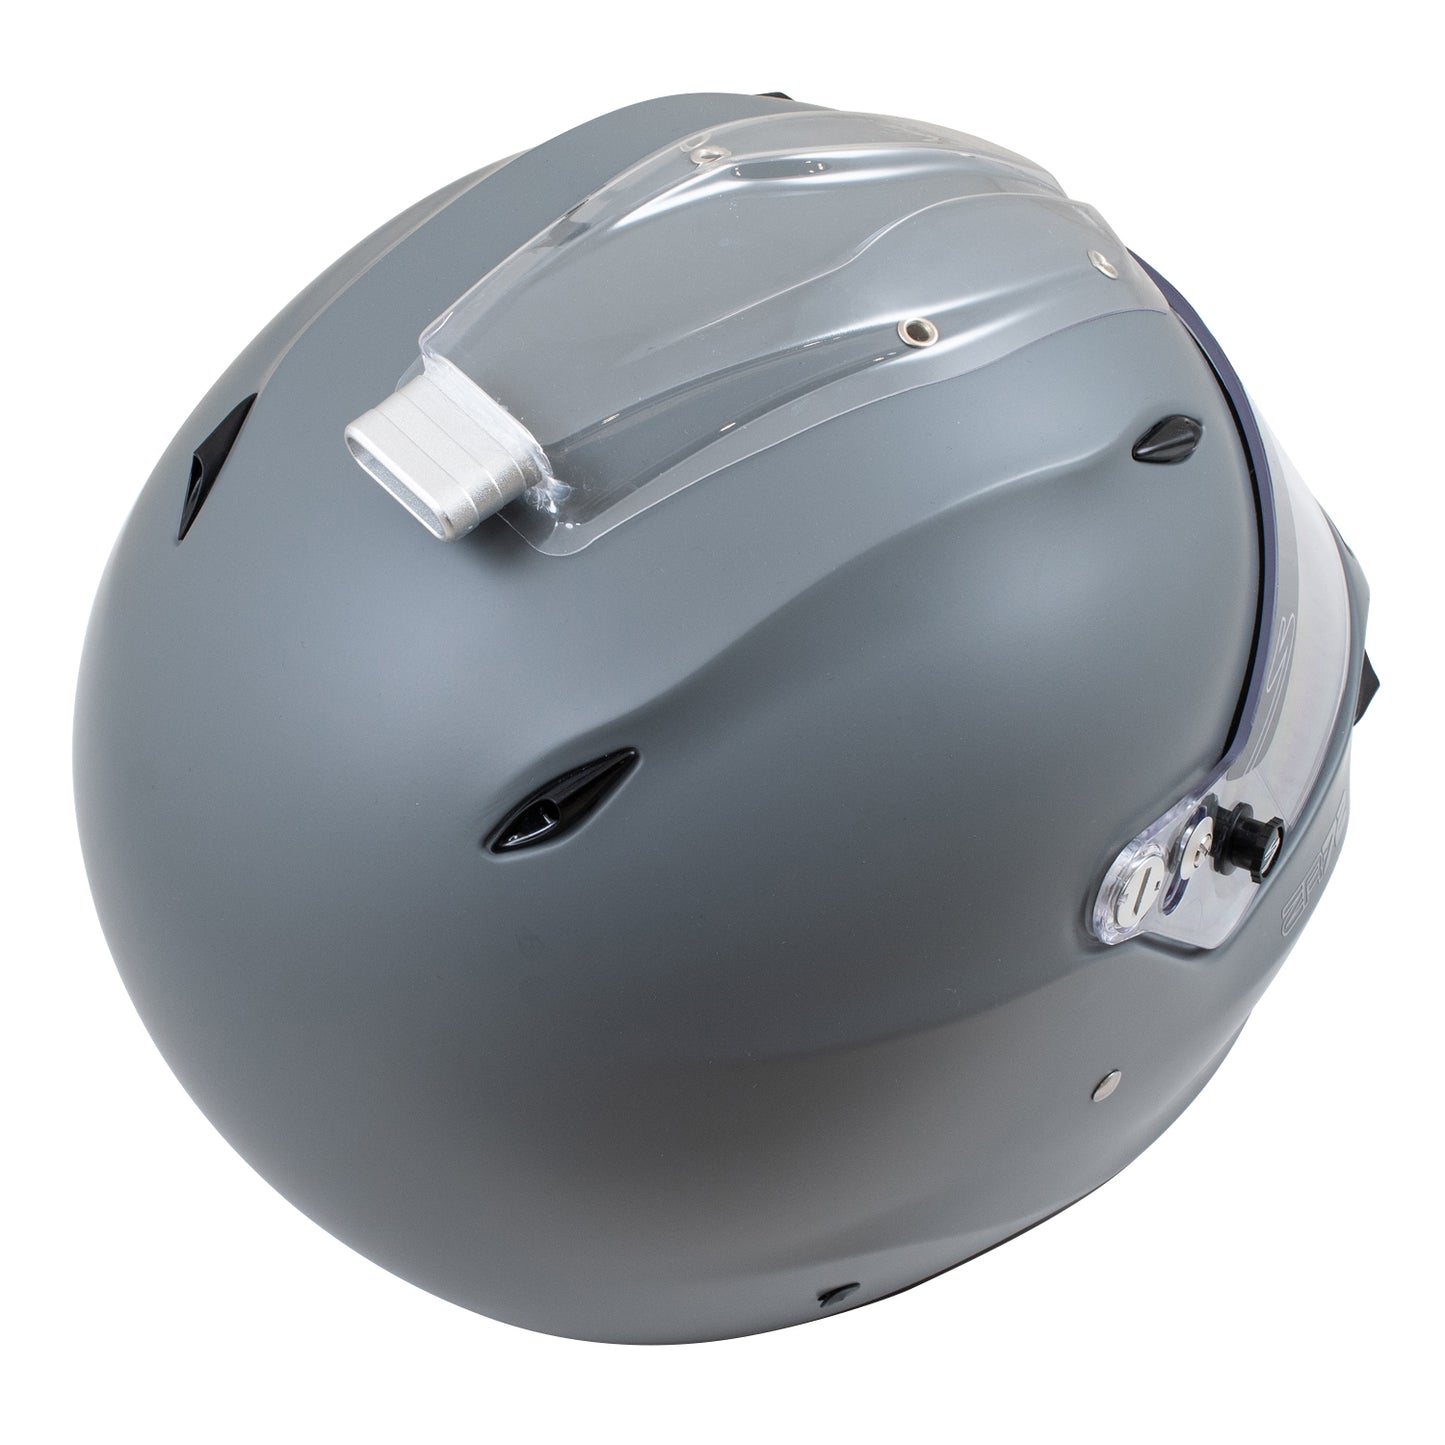 Zamp ZR-72 Auto Racing Helmet-Solid Color